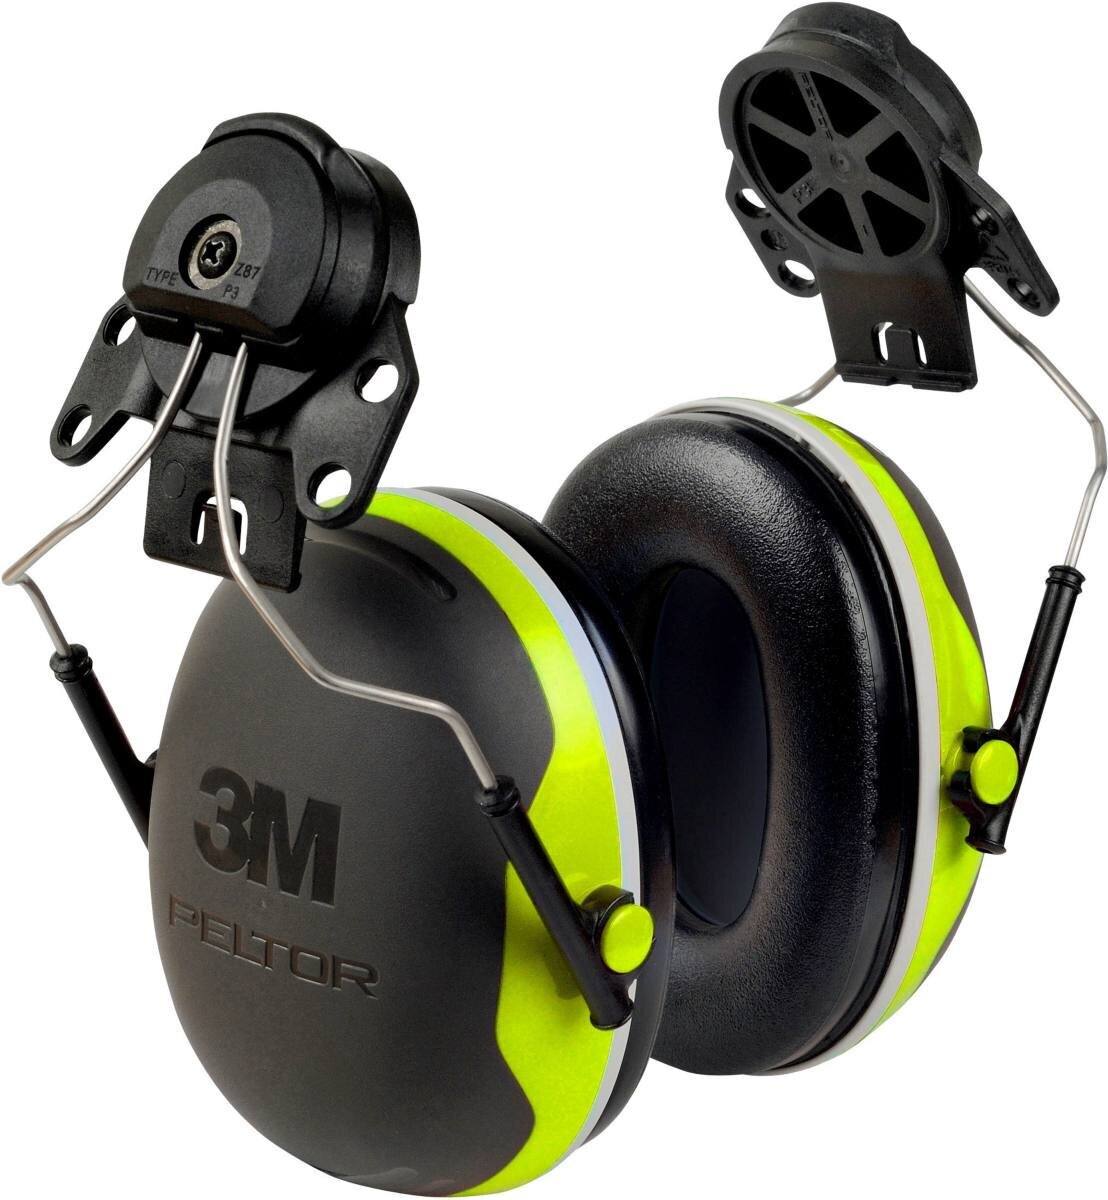 3M Peltor kuulokkeet, X4P3E kypäräkiinnike, neon, keltainen, SNR = 32 dB kypäräadapterin P3E kanssa (kaikkiin 3M kypäröihin, paitsi G2000).